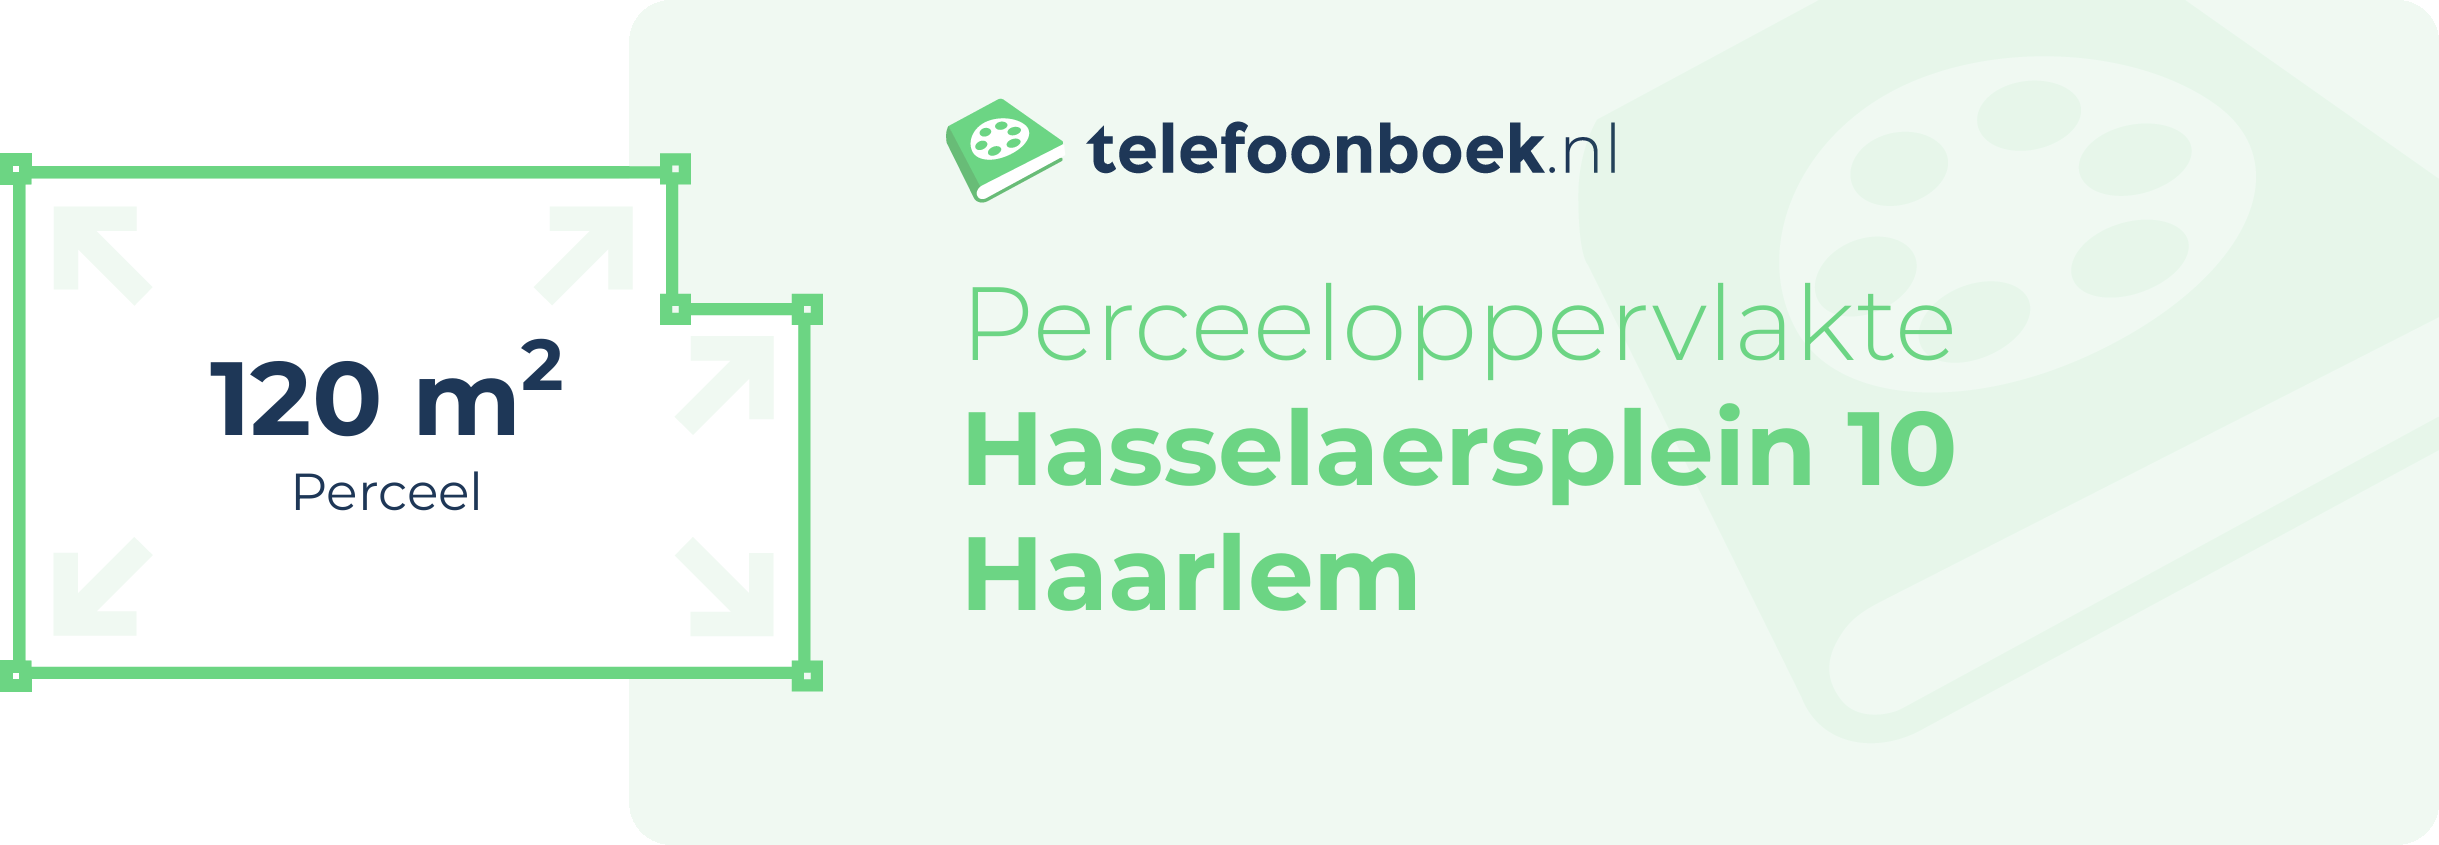 Perceeloppervlakte Hasselaersplein 10 Haarlem